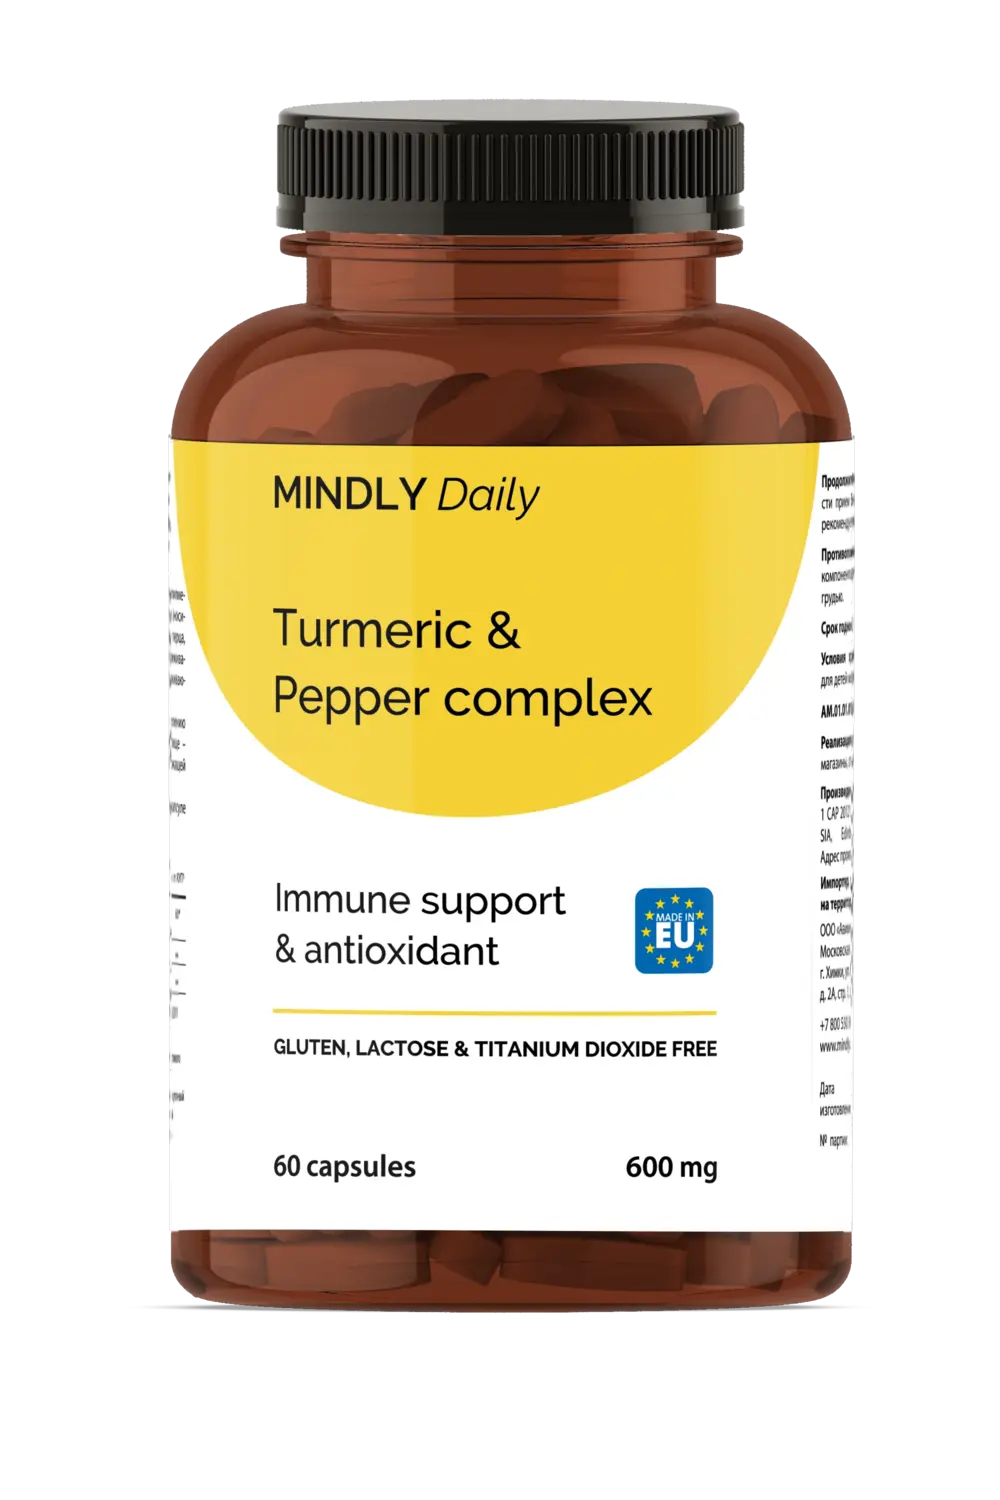 Turmeric & Pepper complex